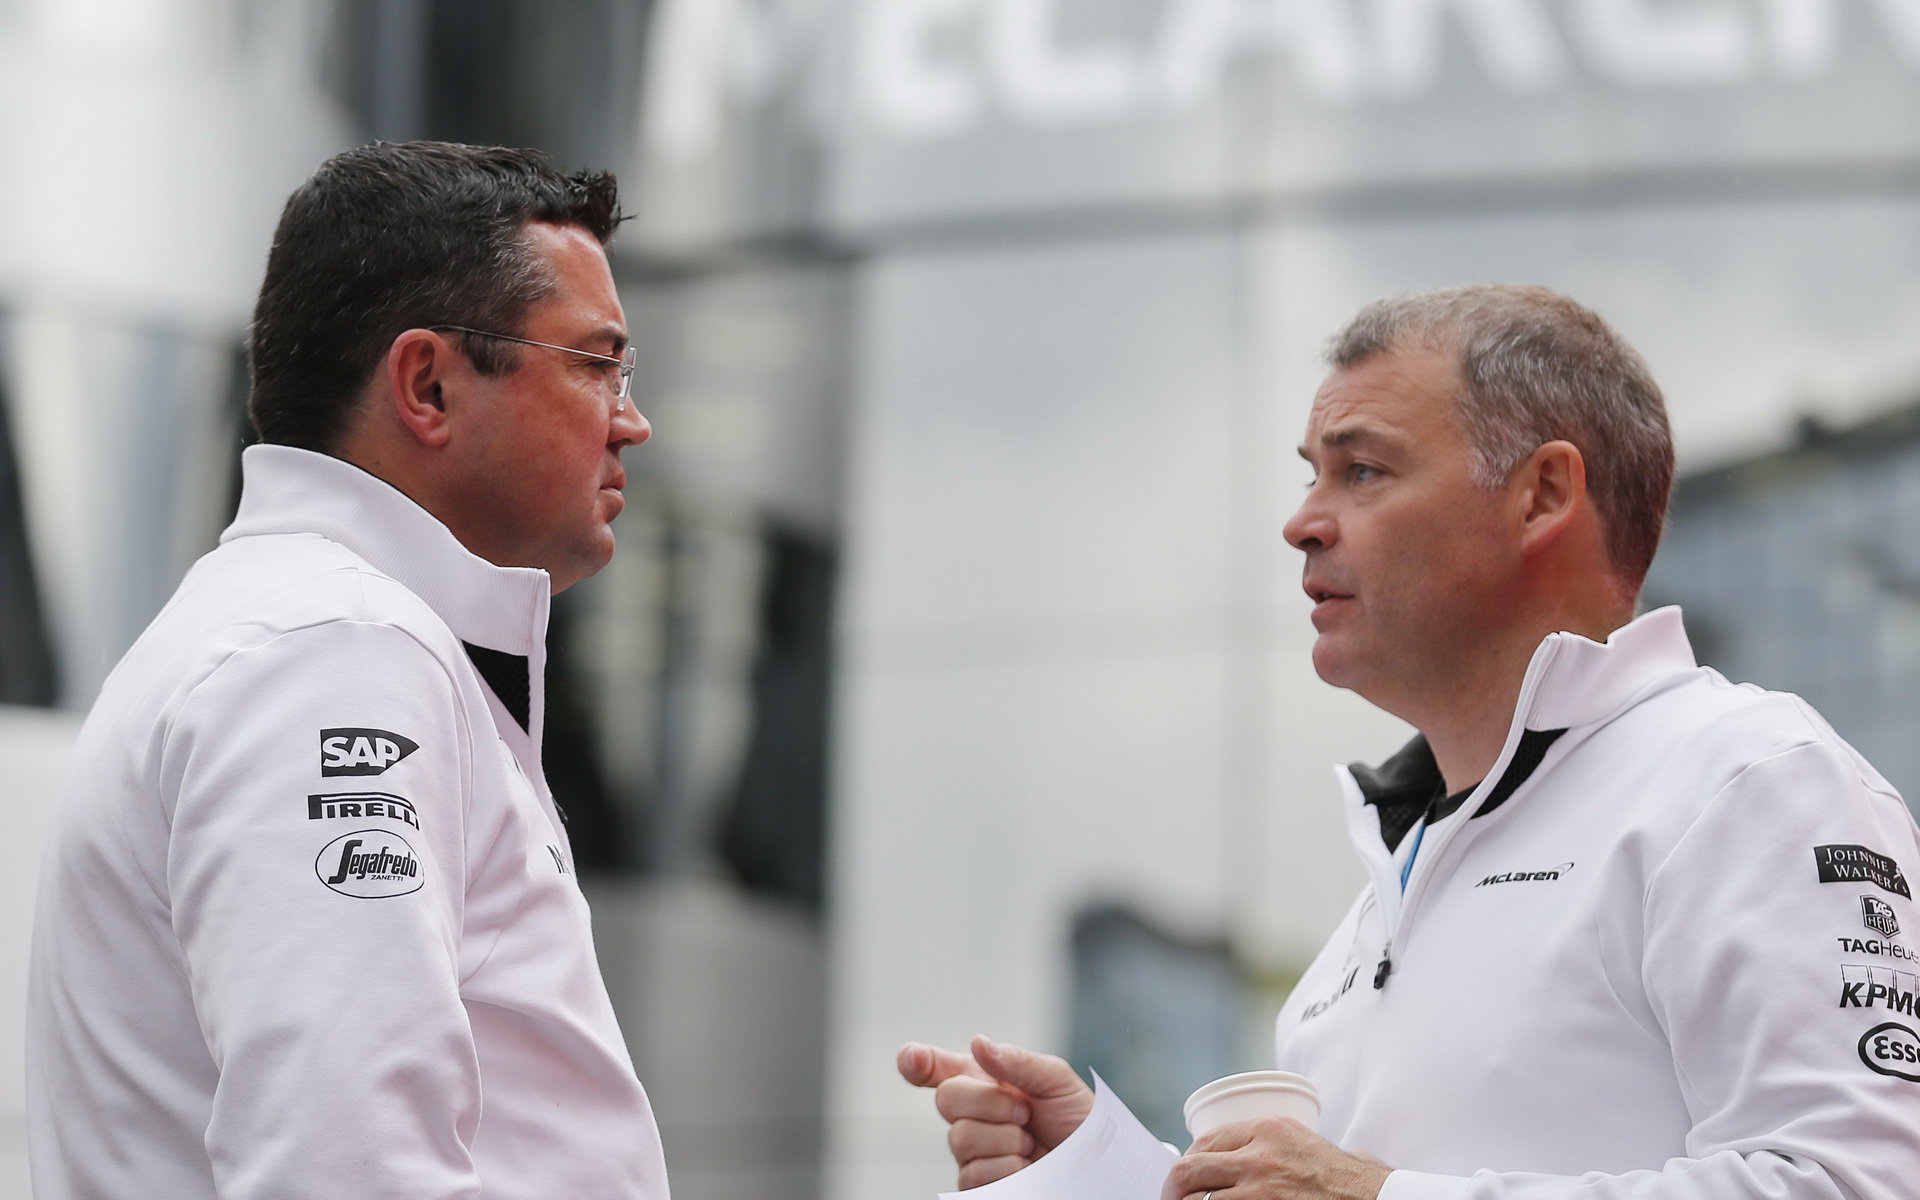 Éric Boullier má s vedením týmu zkušenosti, dokáže dostat McLaren zpět na špici?